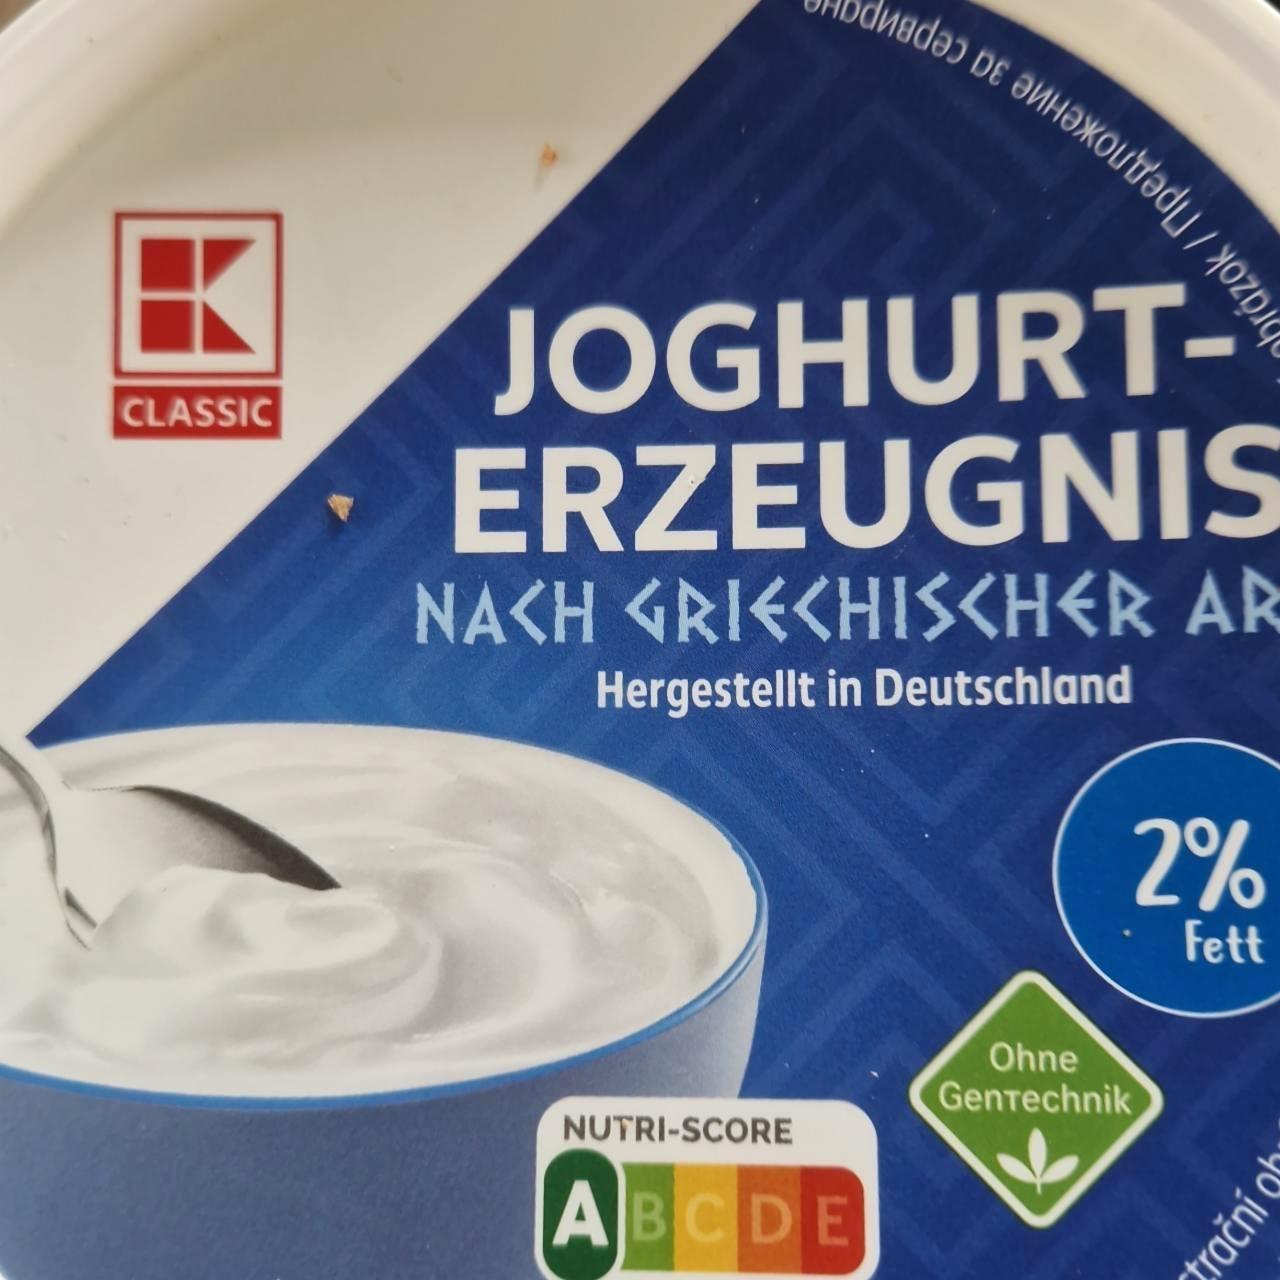 Képek - Joghurt erzeugnis nach Griechischer art 2% K-Classic